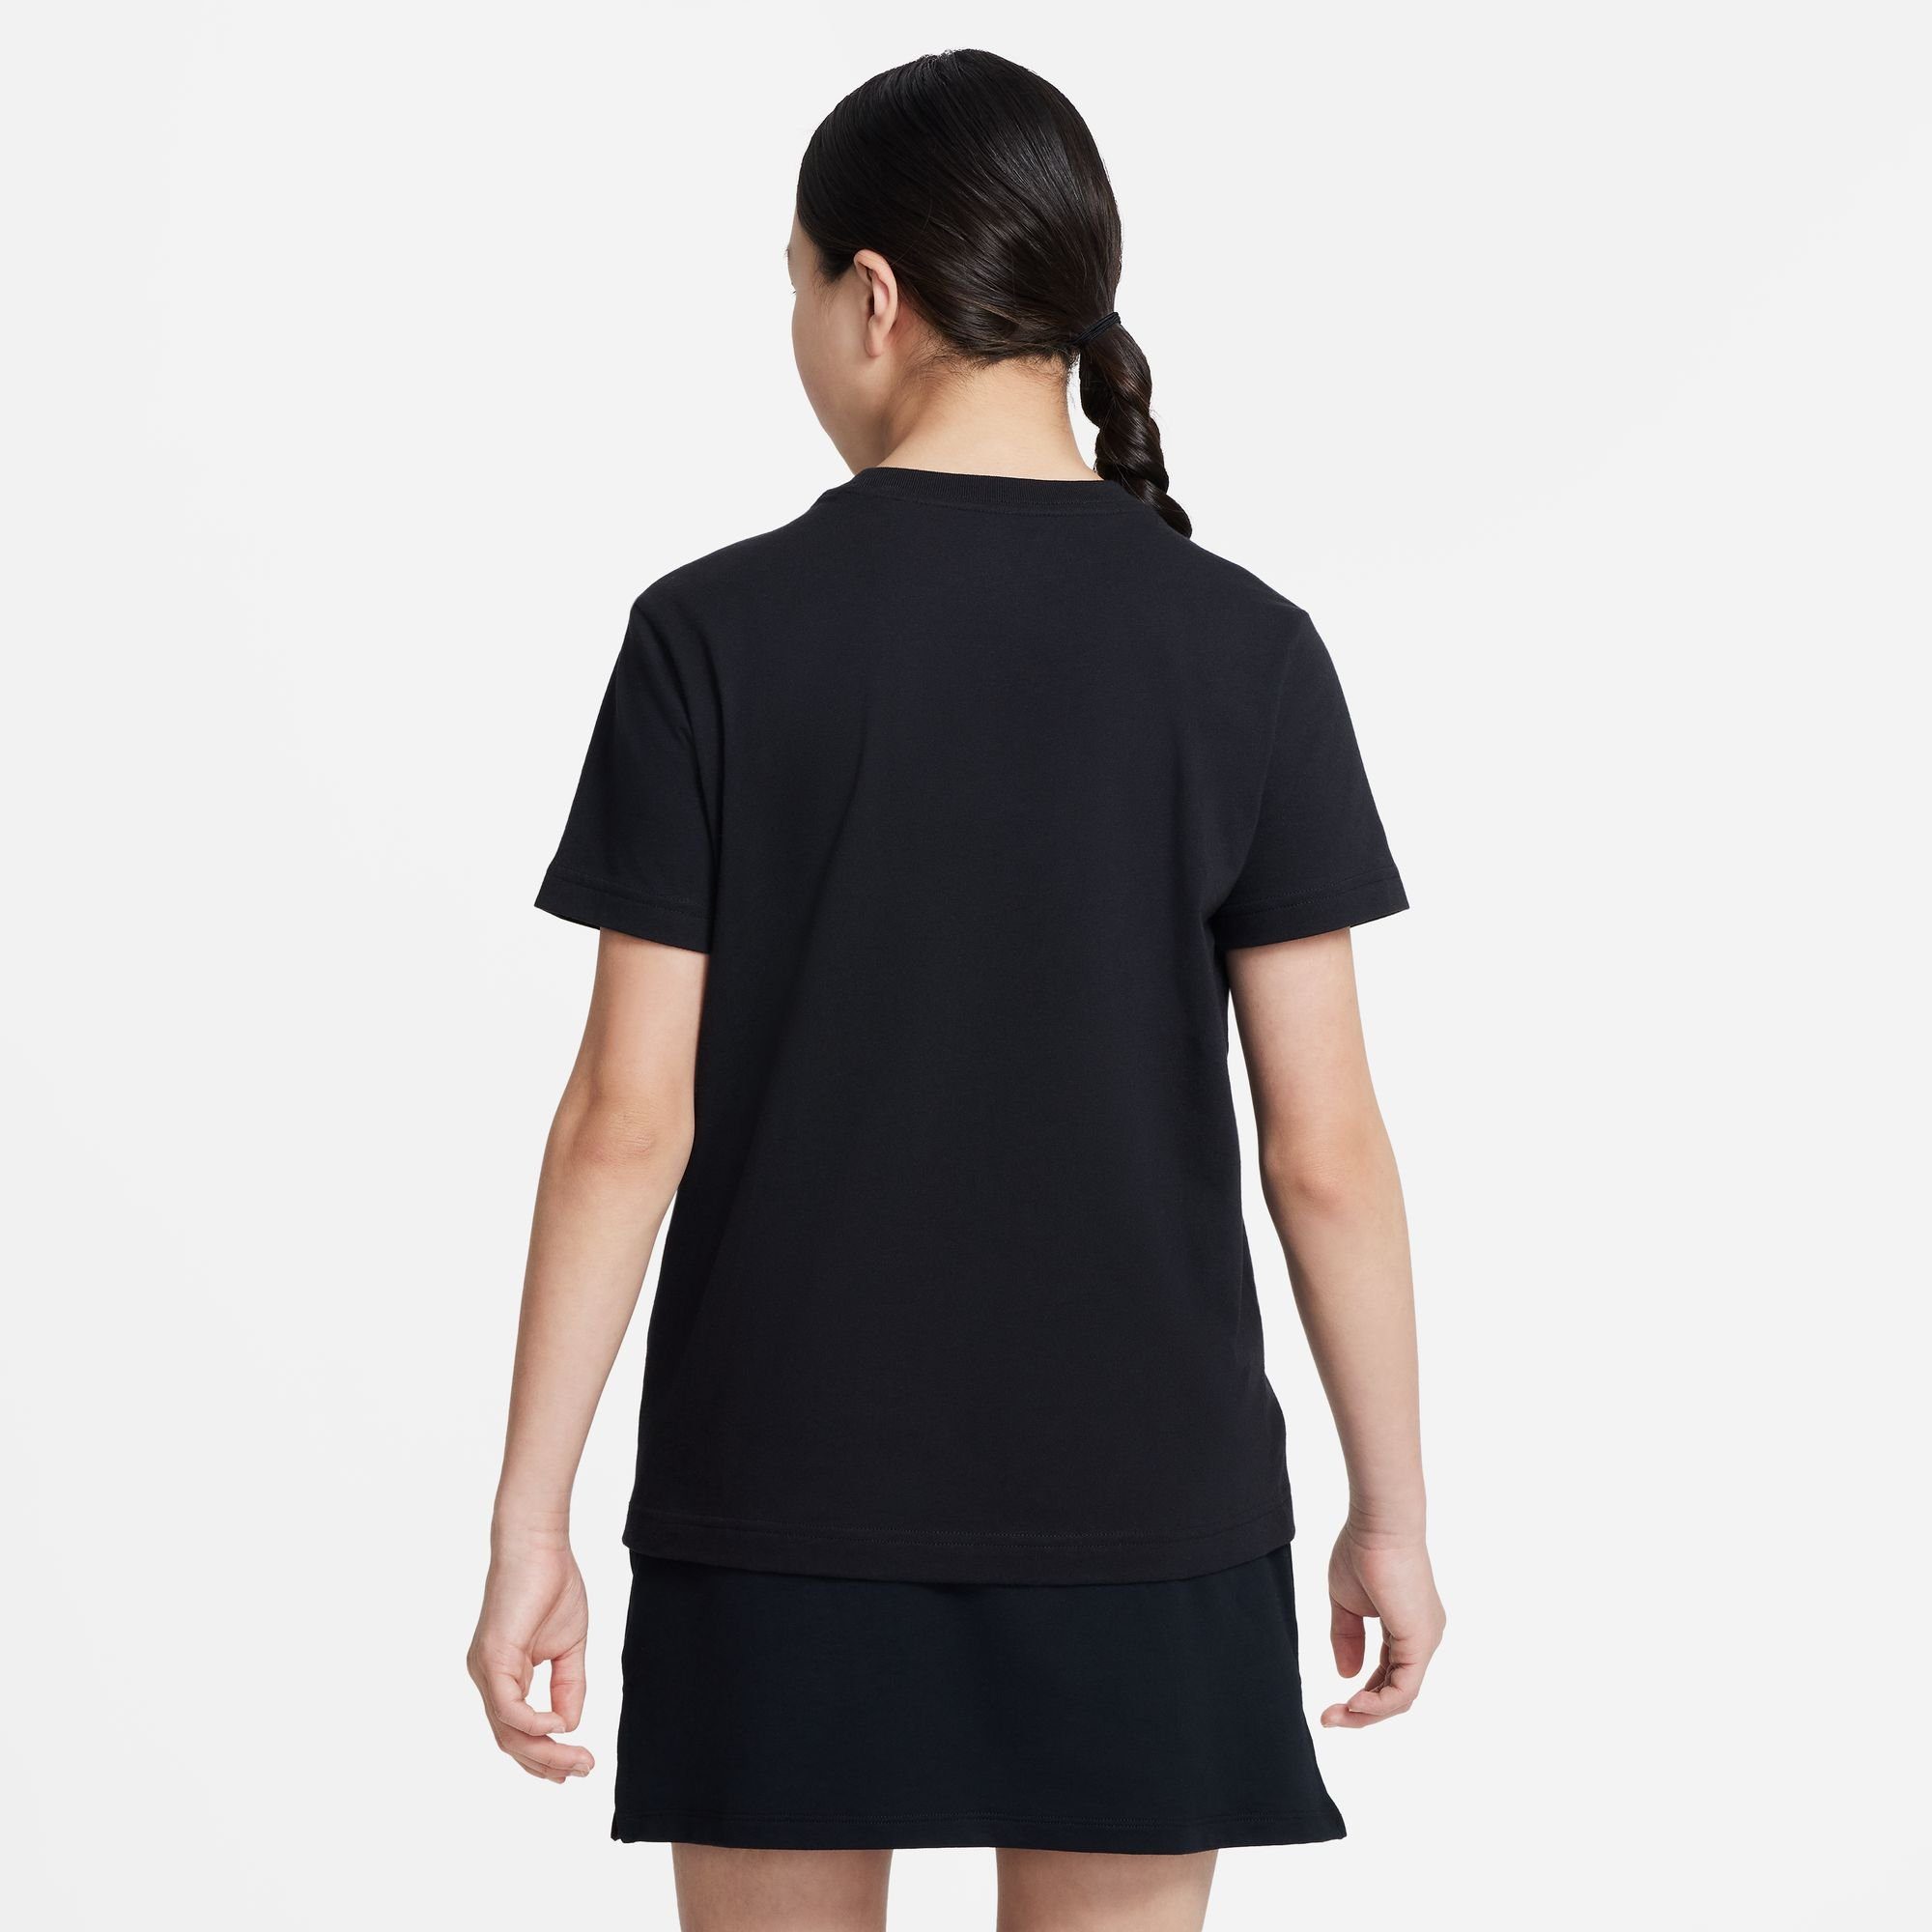 Nike T-SHIRT (GIRLS) KIDS' BIG Sportswear T-Shirt schwarz